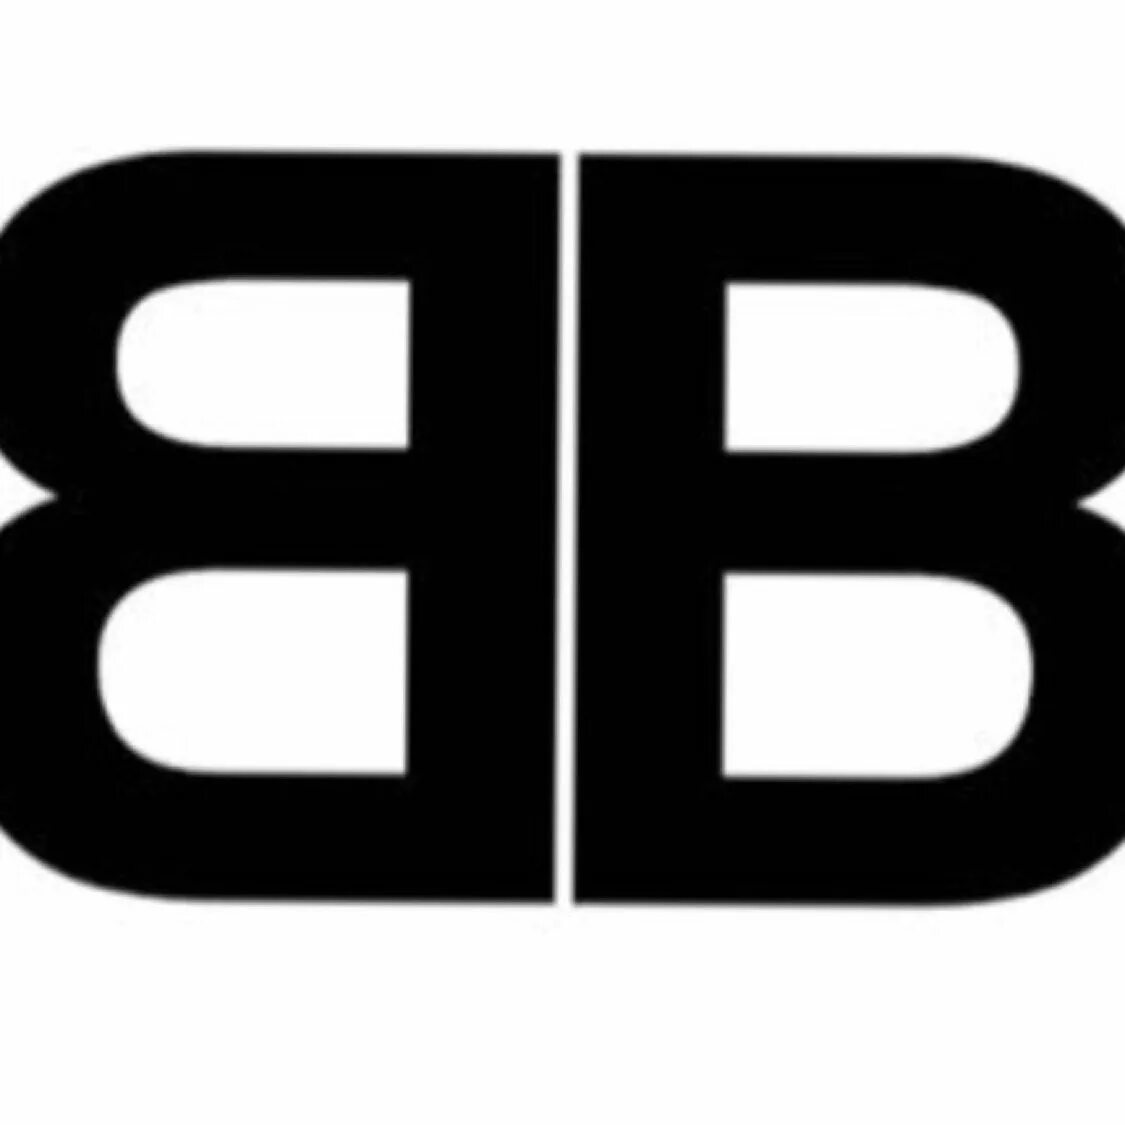 Марка одежды ВВ. Фирма BB. BB лого. Бренд с буквами BB. Бб бю